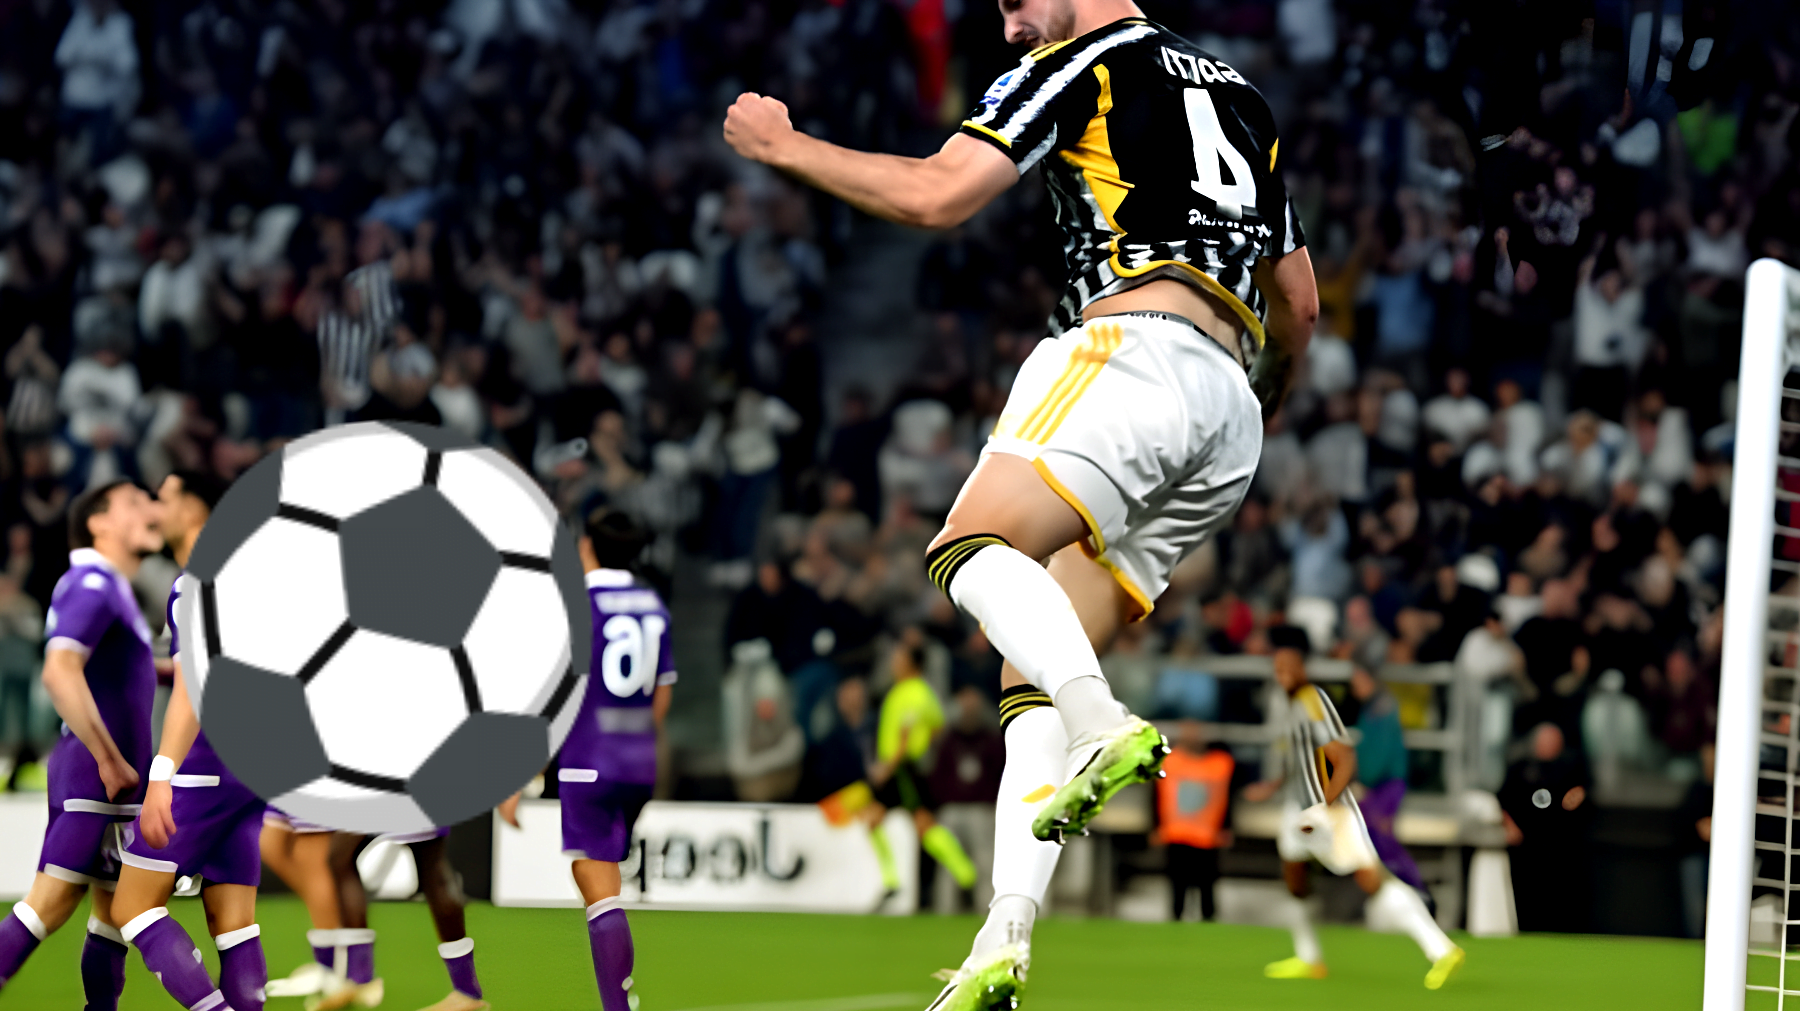 La Juventus cambia volto contro la Lazio: "Alex Sandro in campo al posto di Gatti" - I tifosi reagiscono!